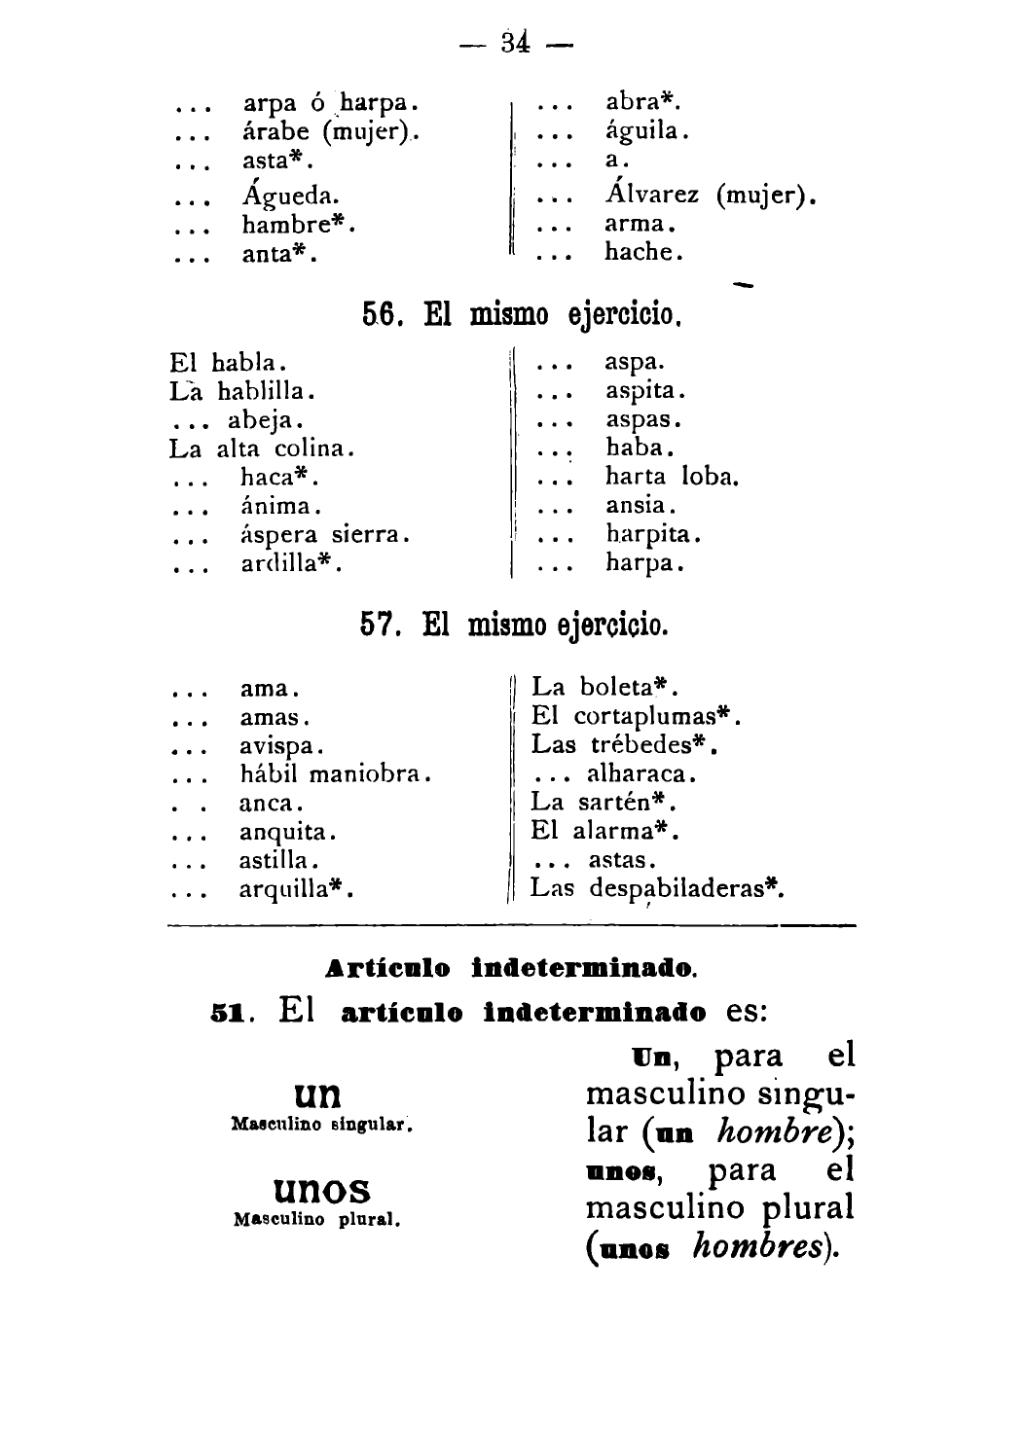 ARTICULAȚIE - Definiția din dicționar - Resurse lingvistice